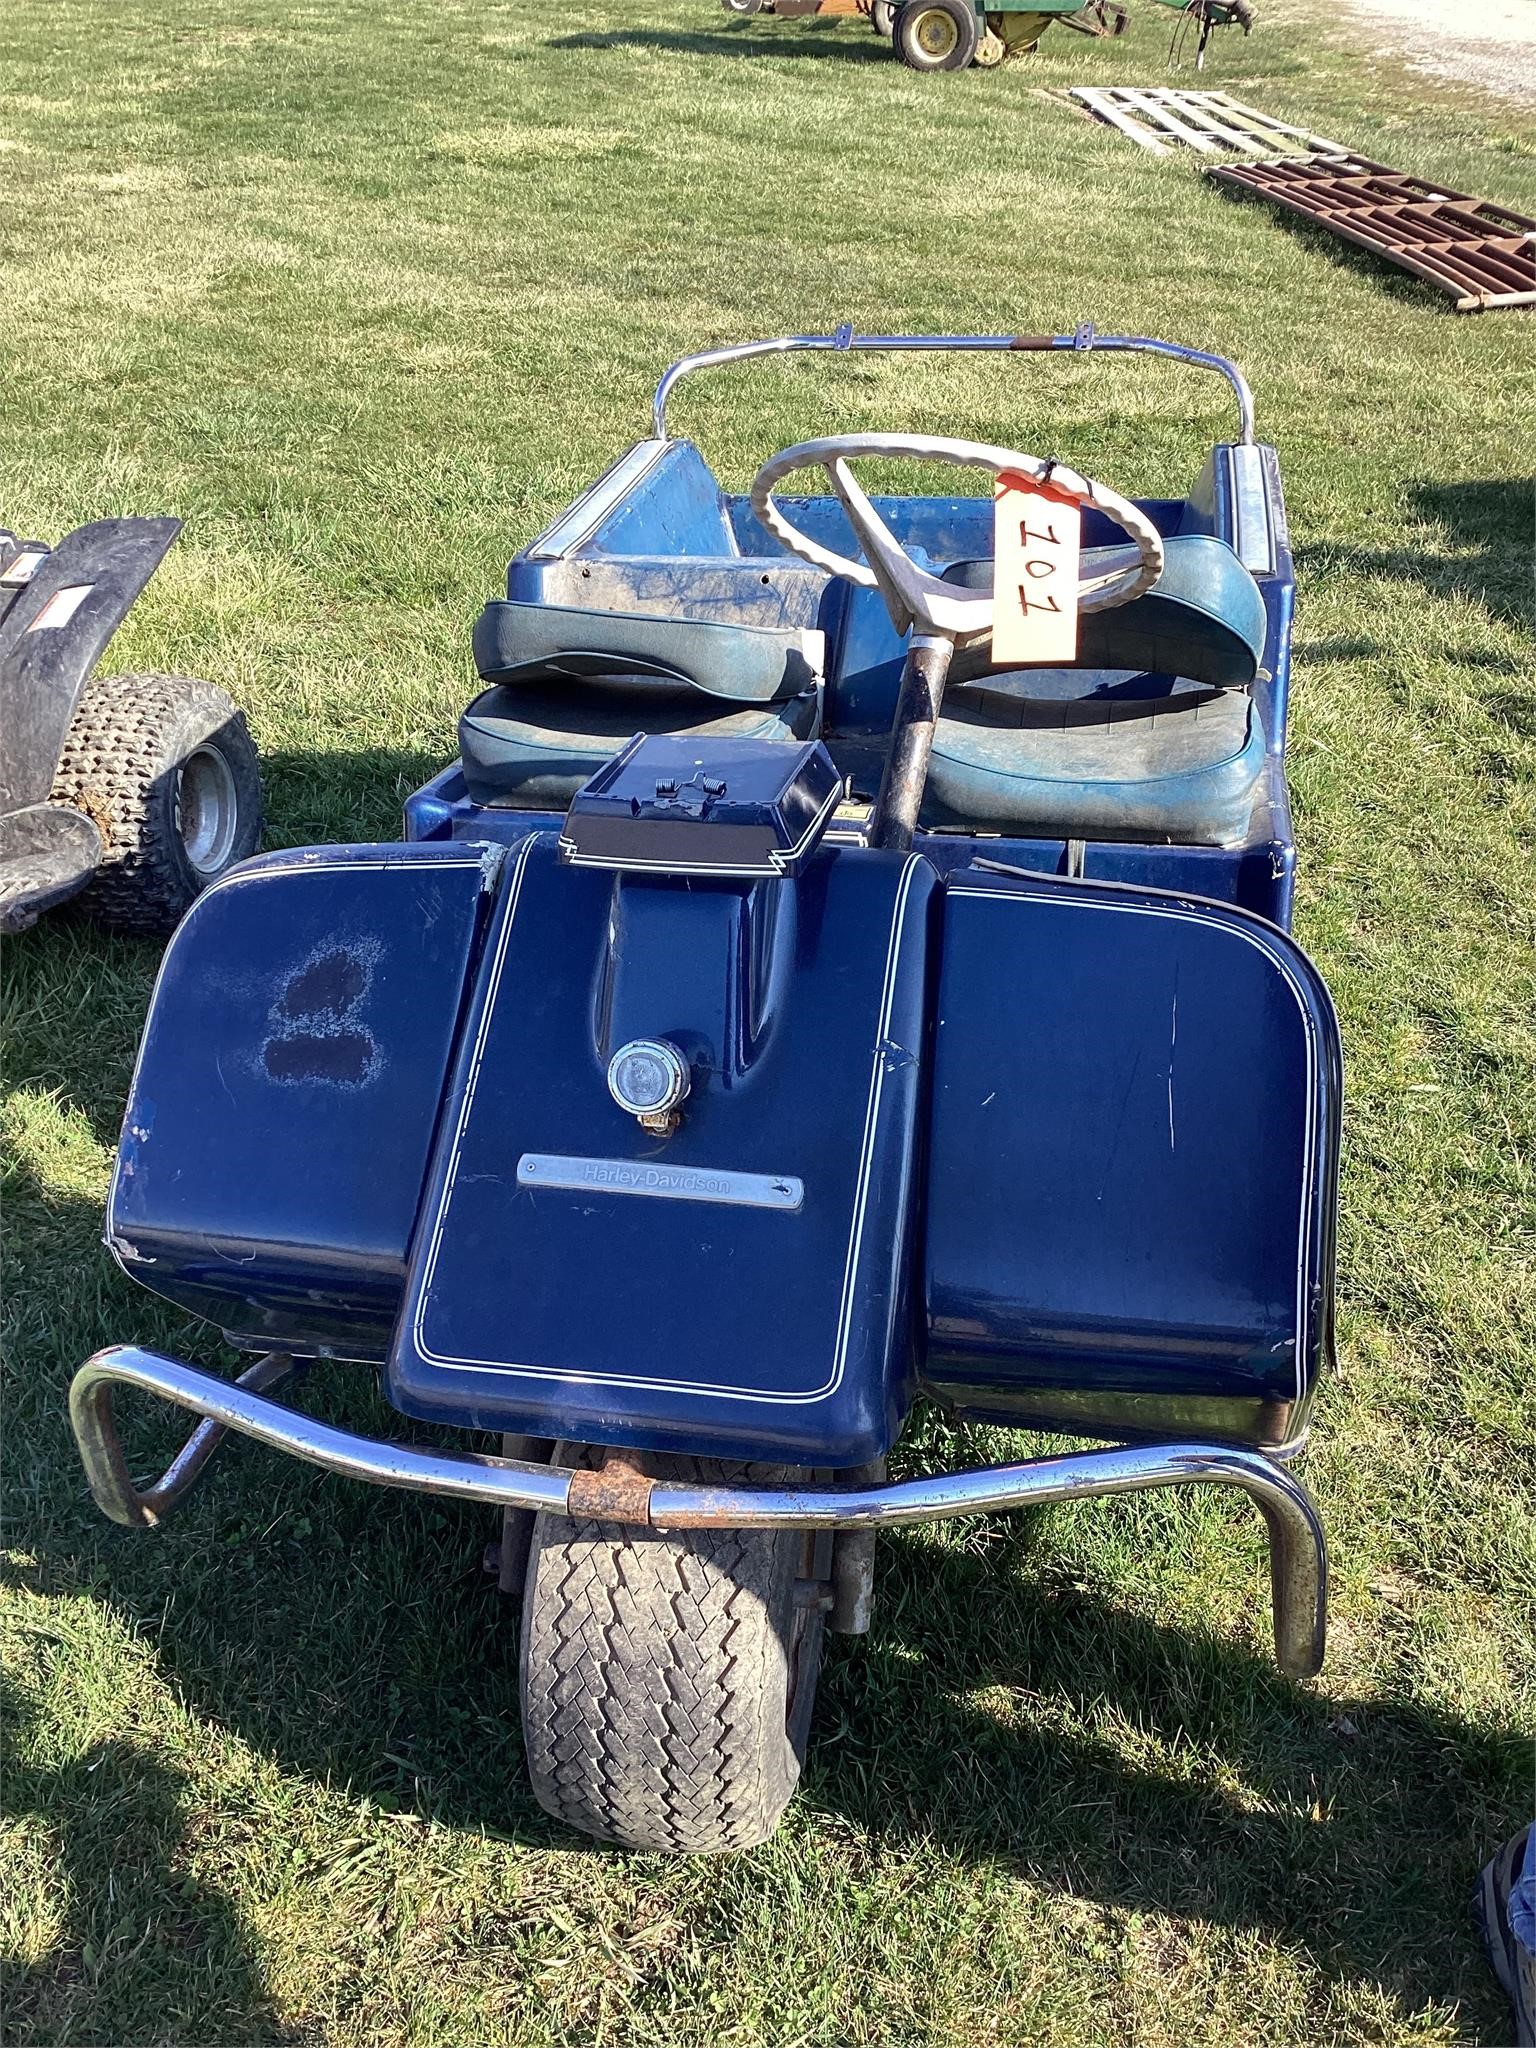 HD gas golf cart